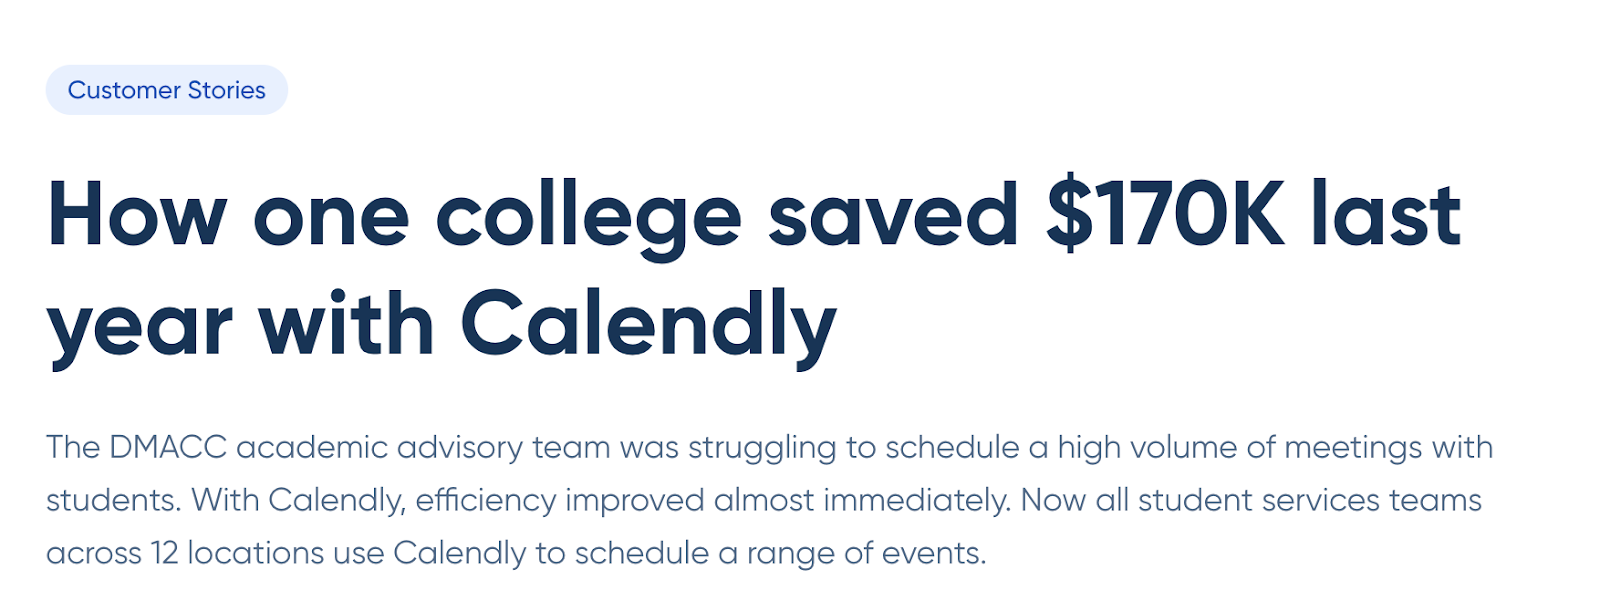 چگونه یک کالج در سال گذشته با Calendly 170 هزار دلار پس انداز کرد.